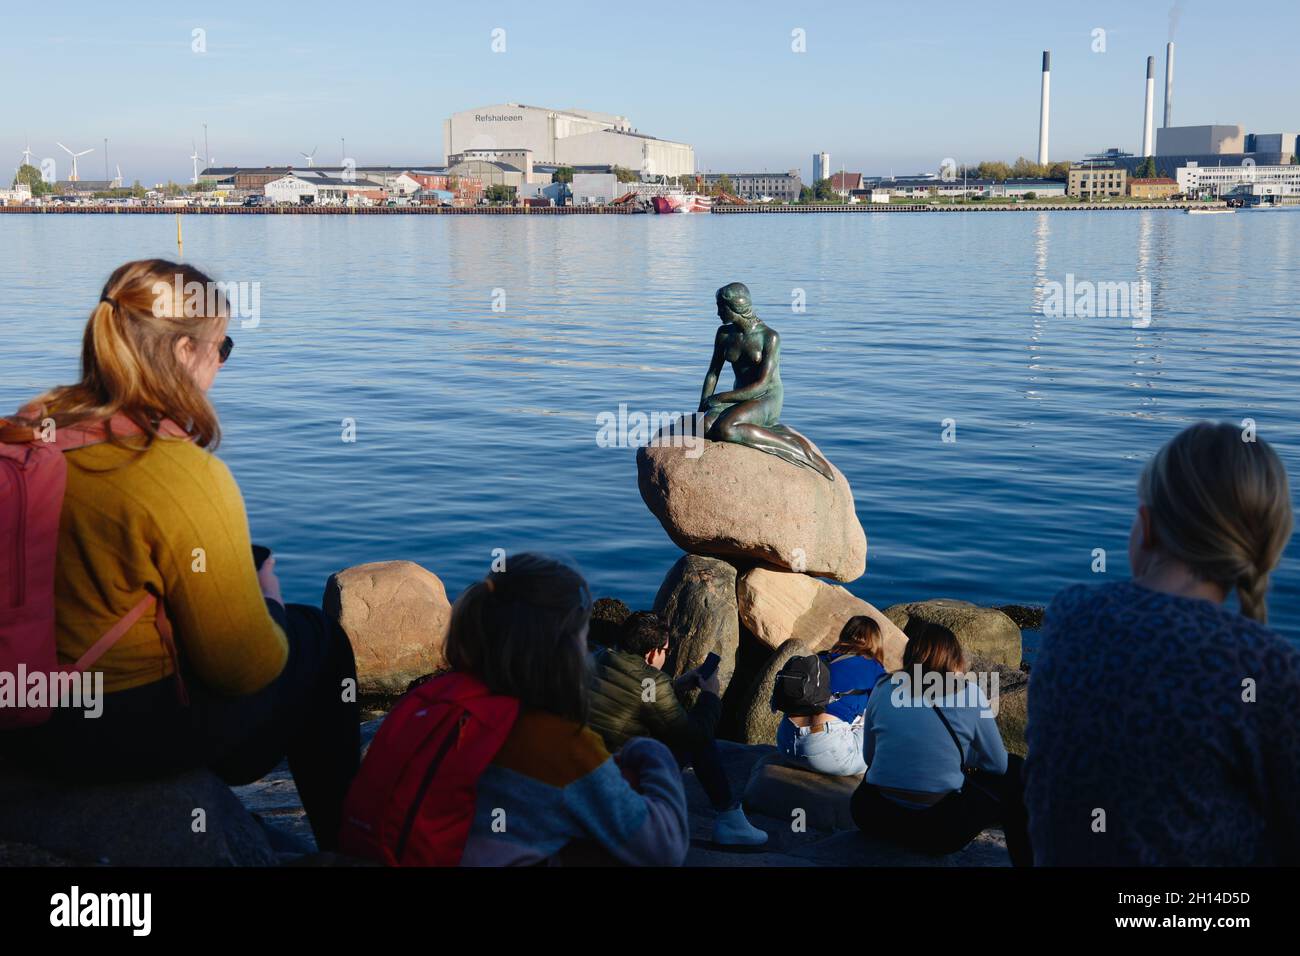 La statue de la petite Sirène (Den Lille Havfrue), par Edvard Eriksen (1913), Hans Christian Andersen, Copenhague, Danemark, Scandinavie,Octobre 2021 Banque D'Images